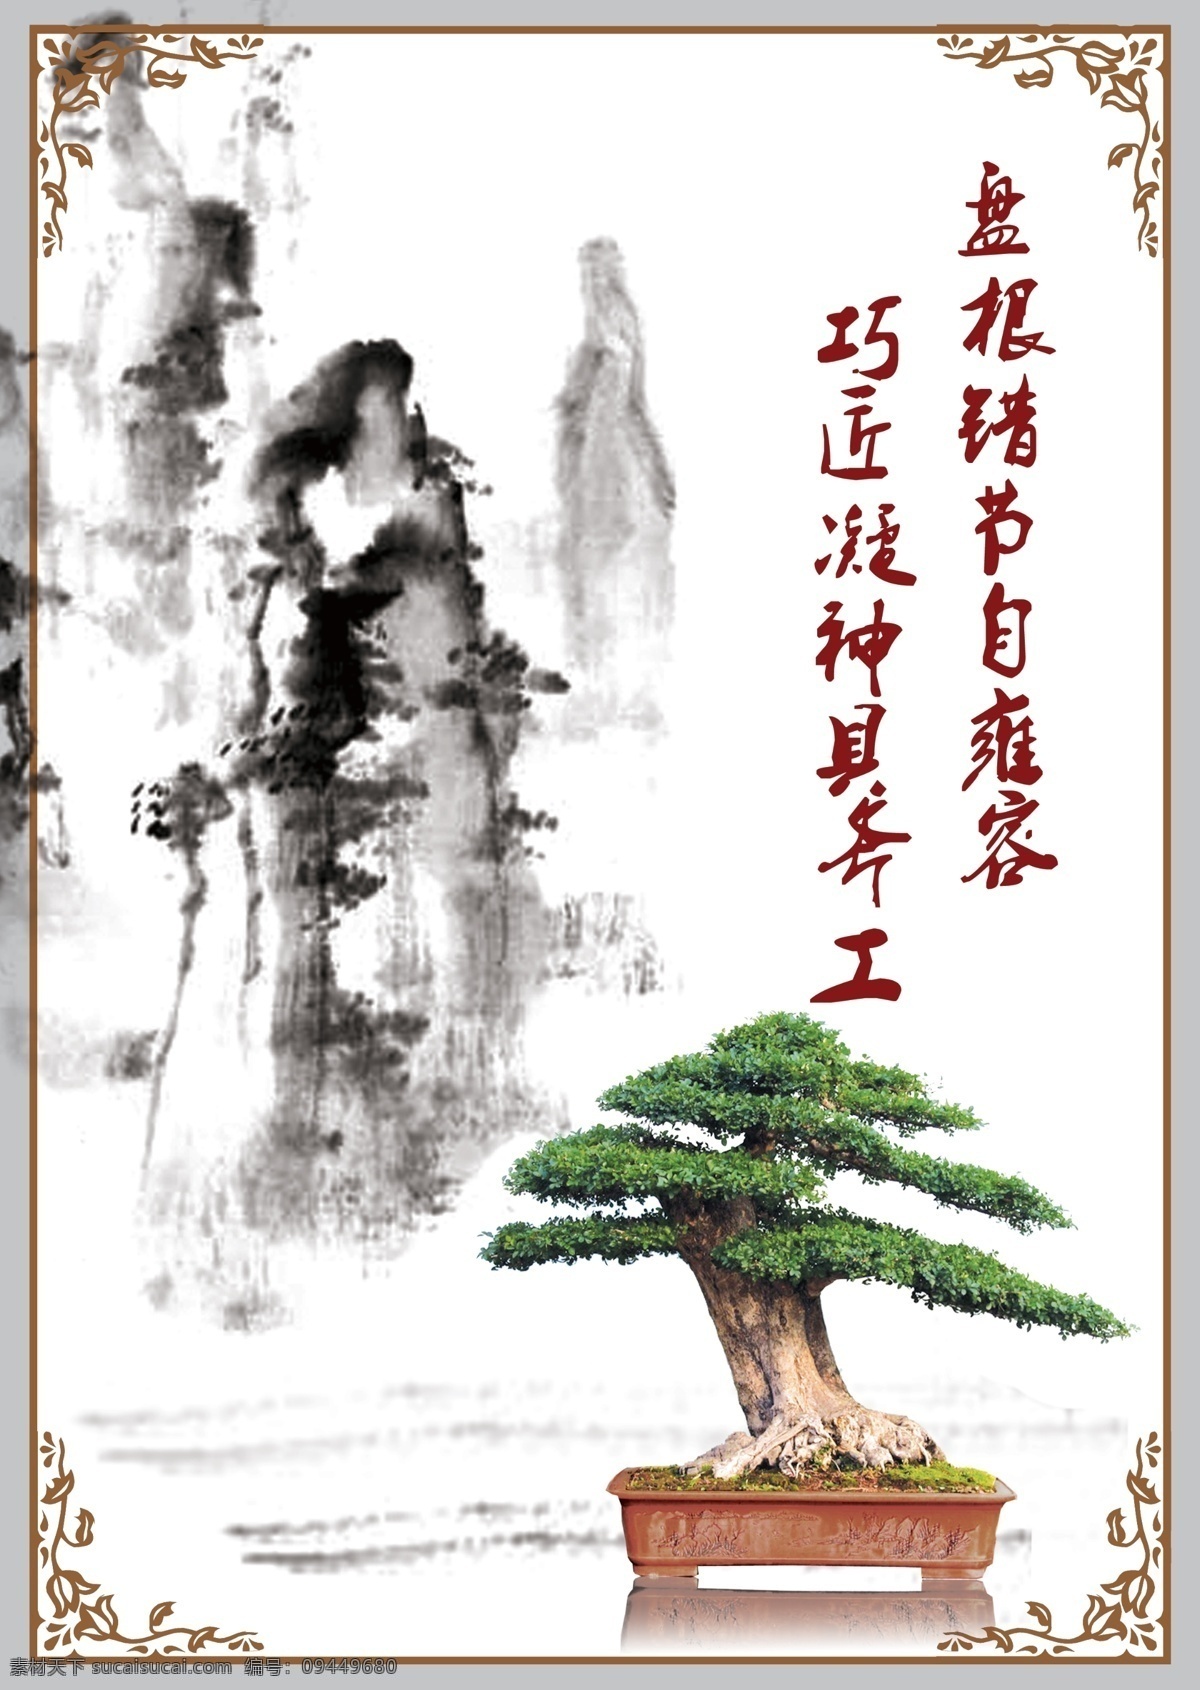 松树盆景展板 盆景 植物 国画 中国风 古典边框 展板模板 广告设计模板 源文件